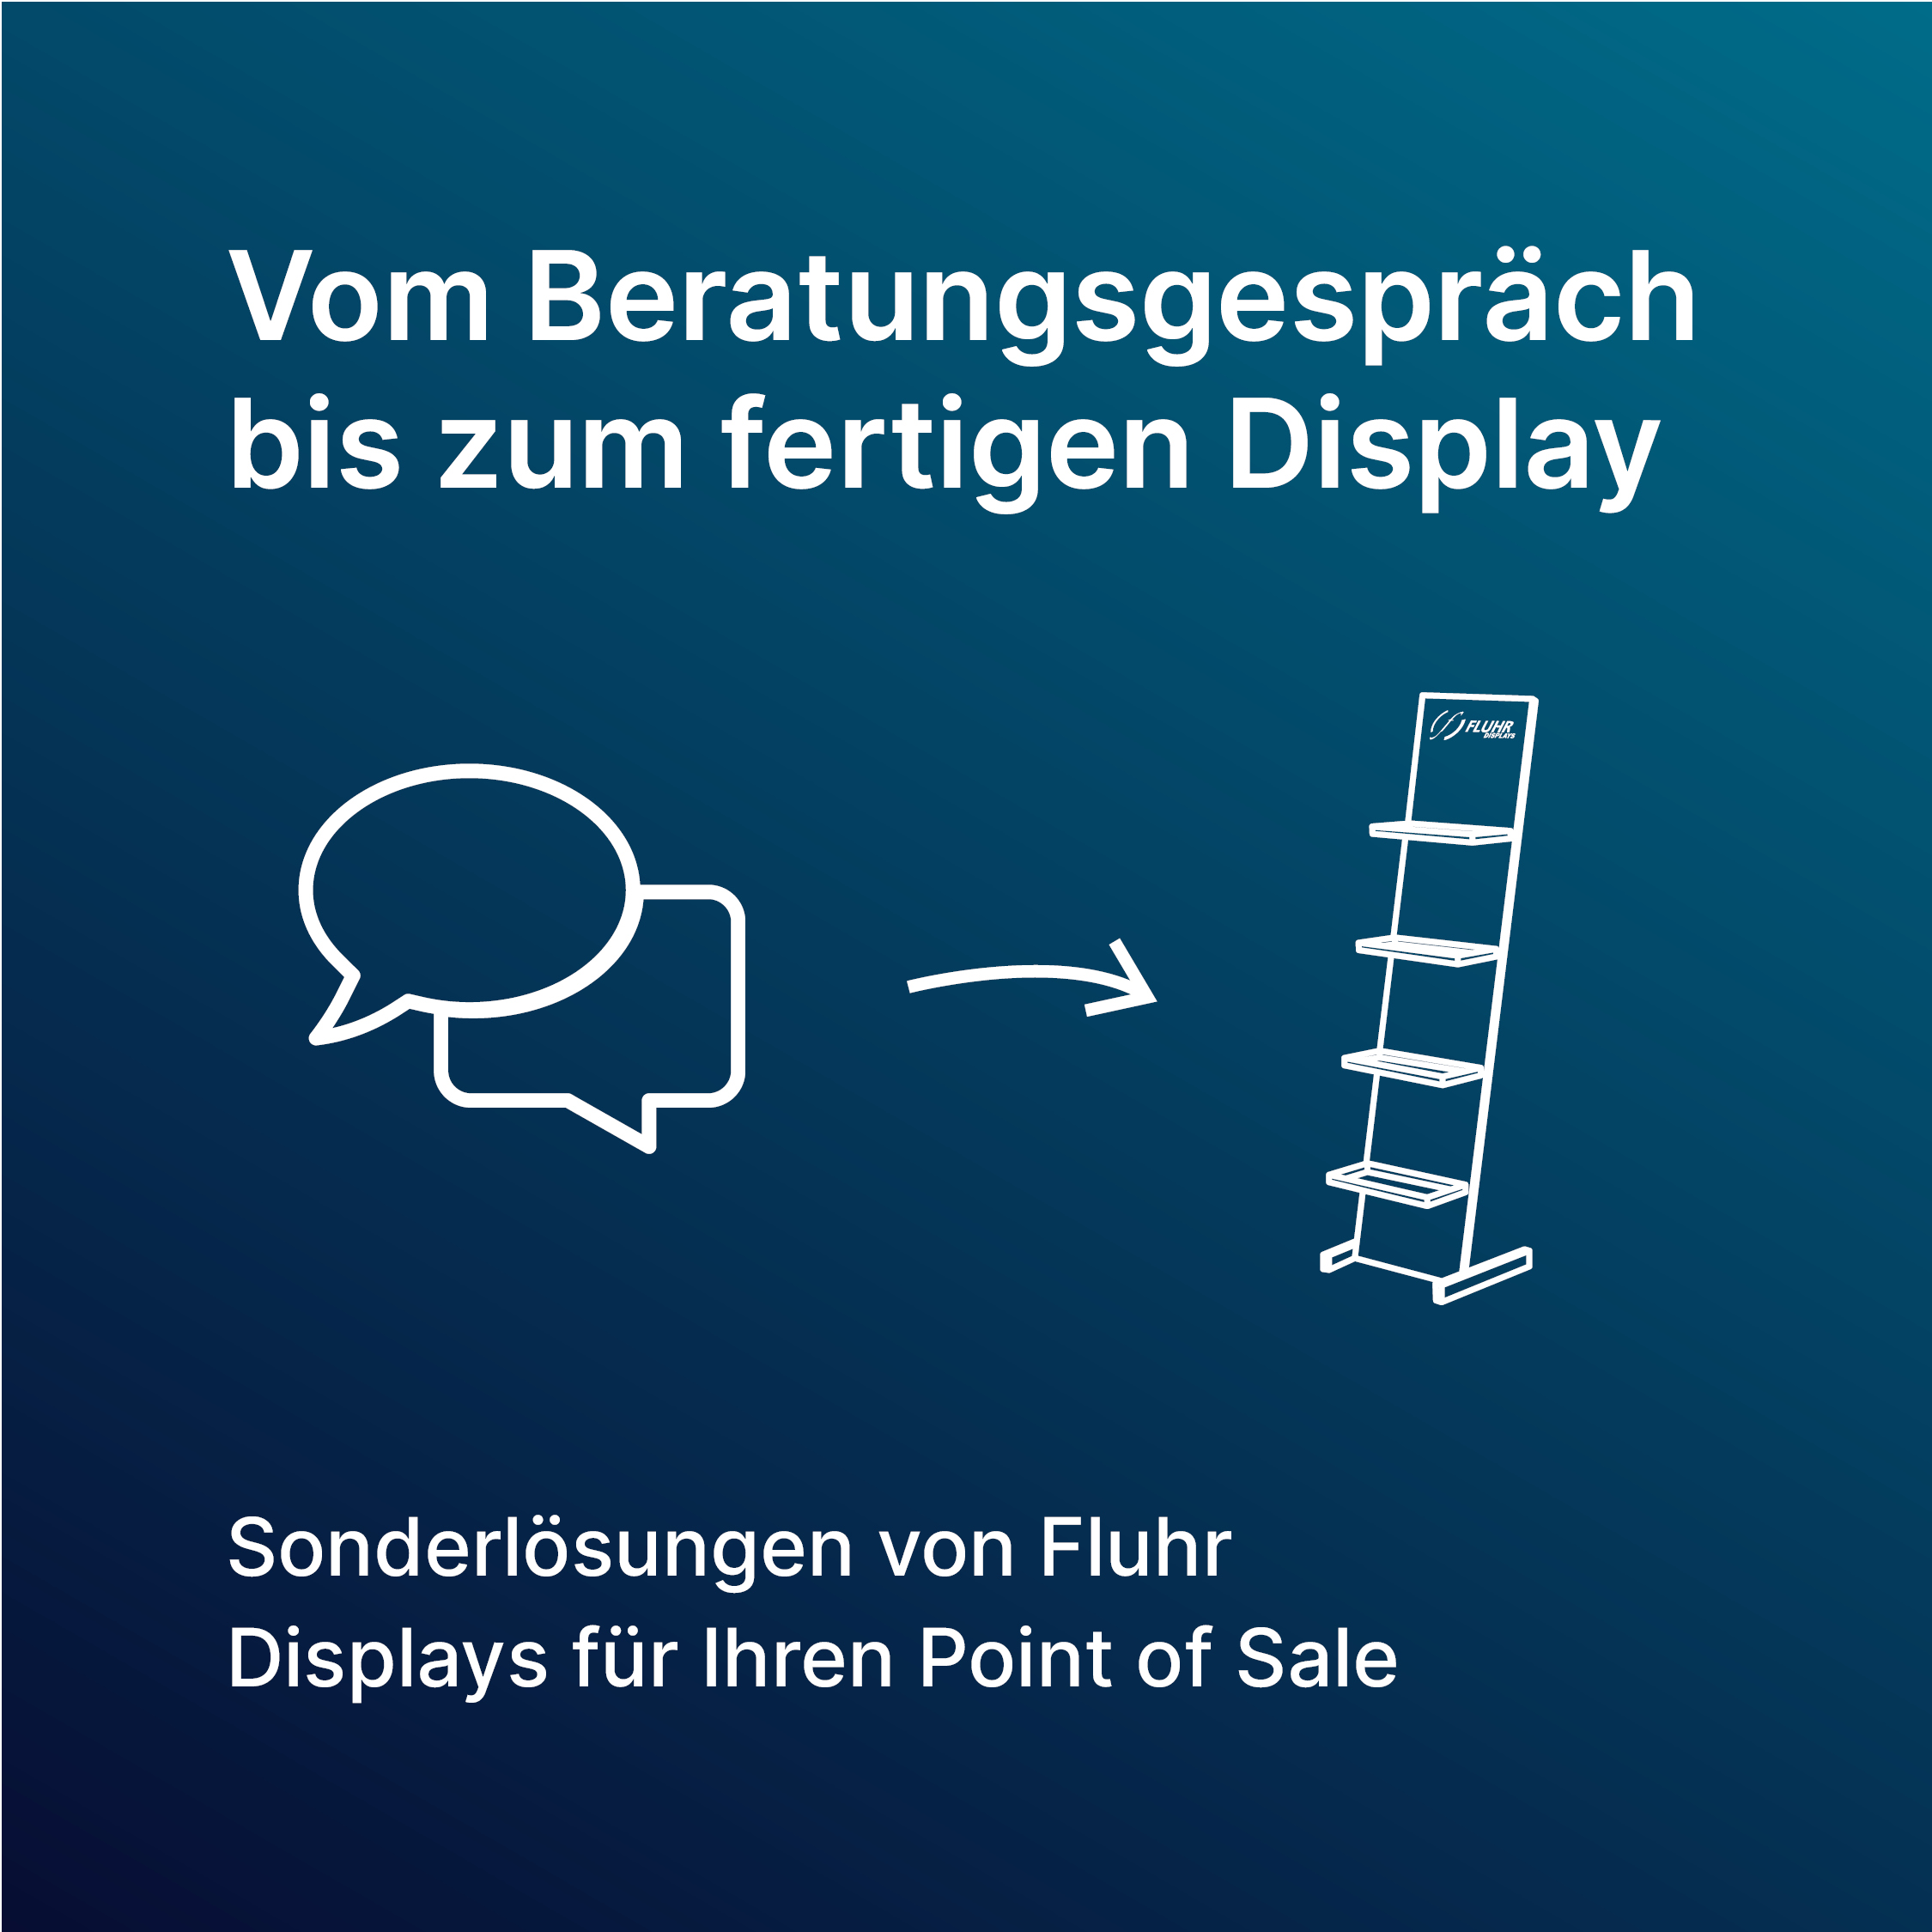 Vom Beratungsgespräch bis zum fertigen Display - Sonderlösungen von Fluhr Displays für Ihren Point of Sale